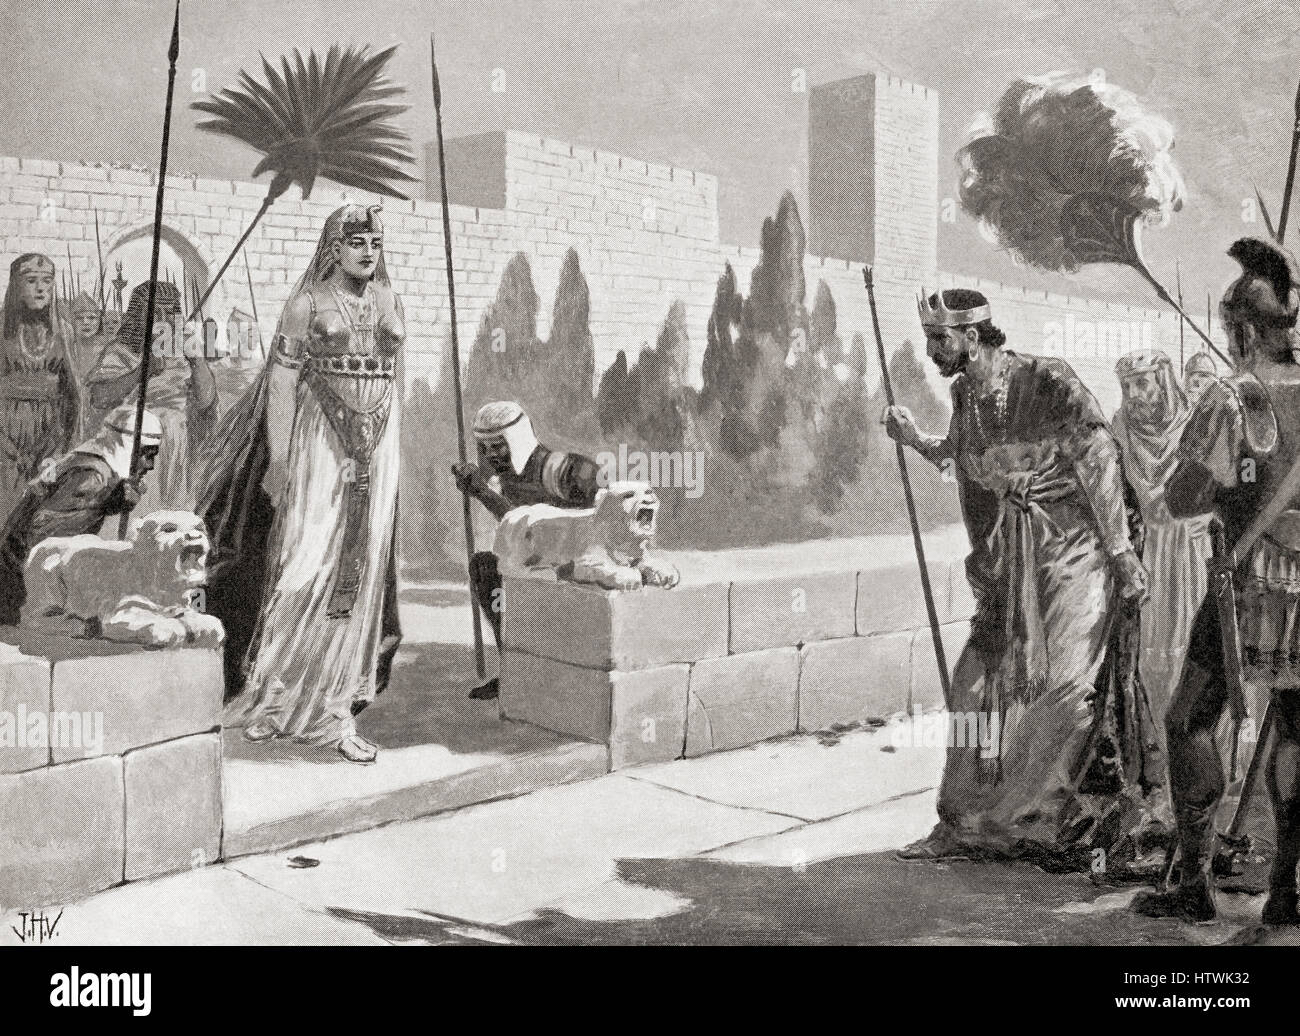 Cleopatra besucht Herodes in Jerusalem, 33 v. Chr. Kleopatra VII Philopator, 69-30 v. Chr..  Letzte aktive Herrscher der ptolemäischen Ägypten.  Herodes, 74/73 v. Chr. – 4 v. Chr., aka Herodes dem großen und Herod I. King von Judäa.  Hutchinson Geschichte der Nationen veröffentlichte 1915. Stockfoto